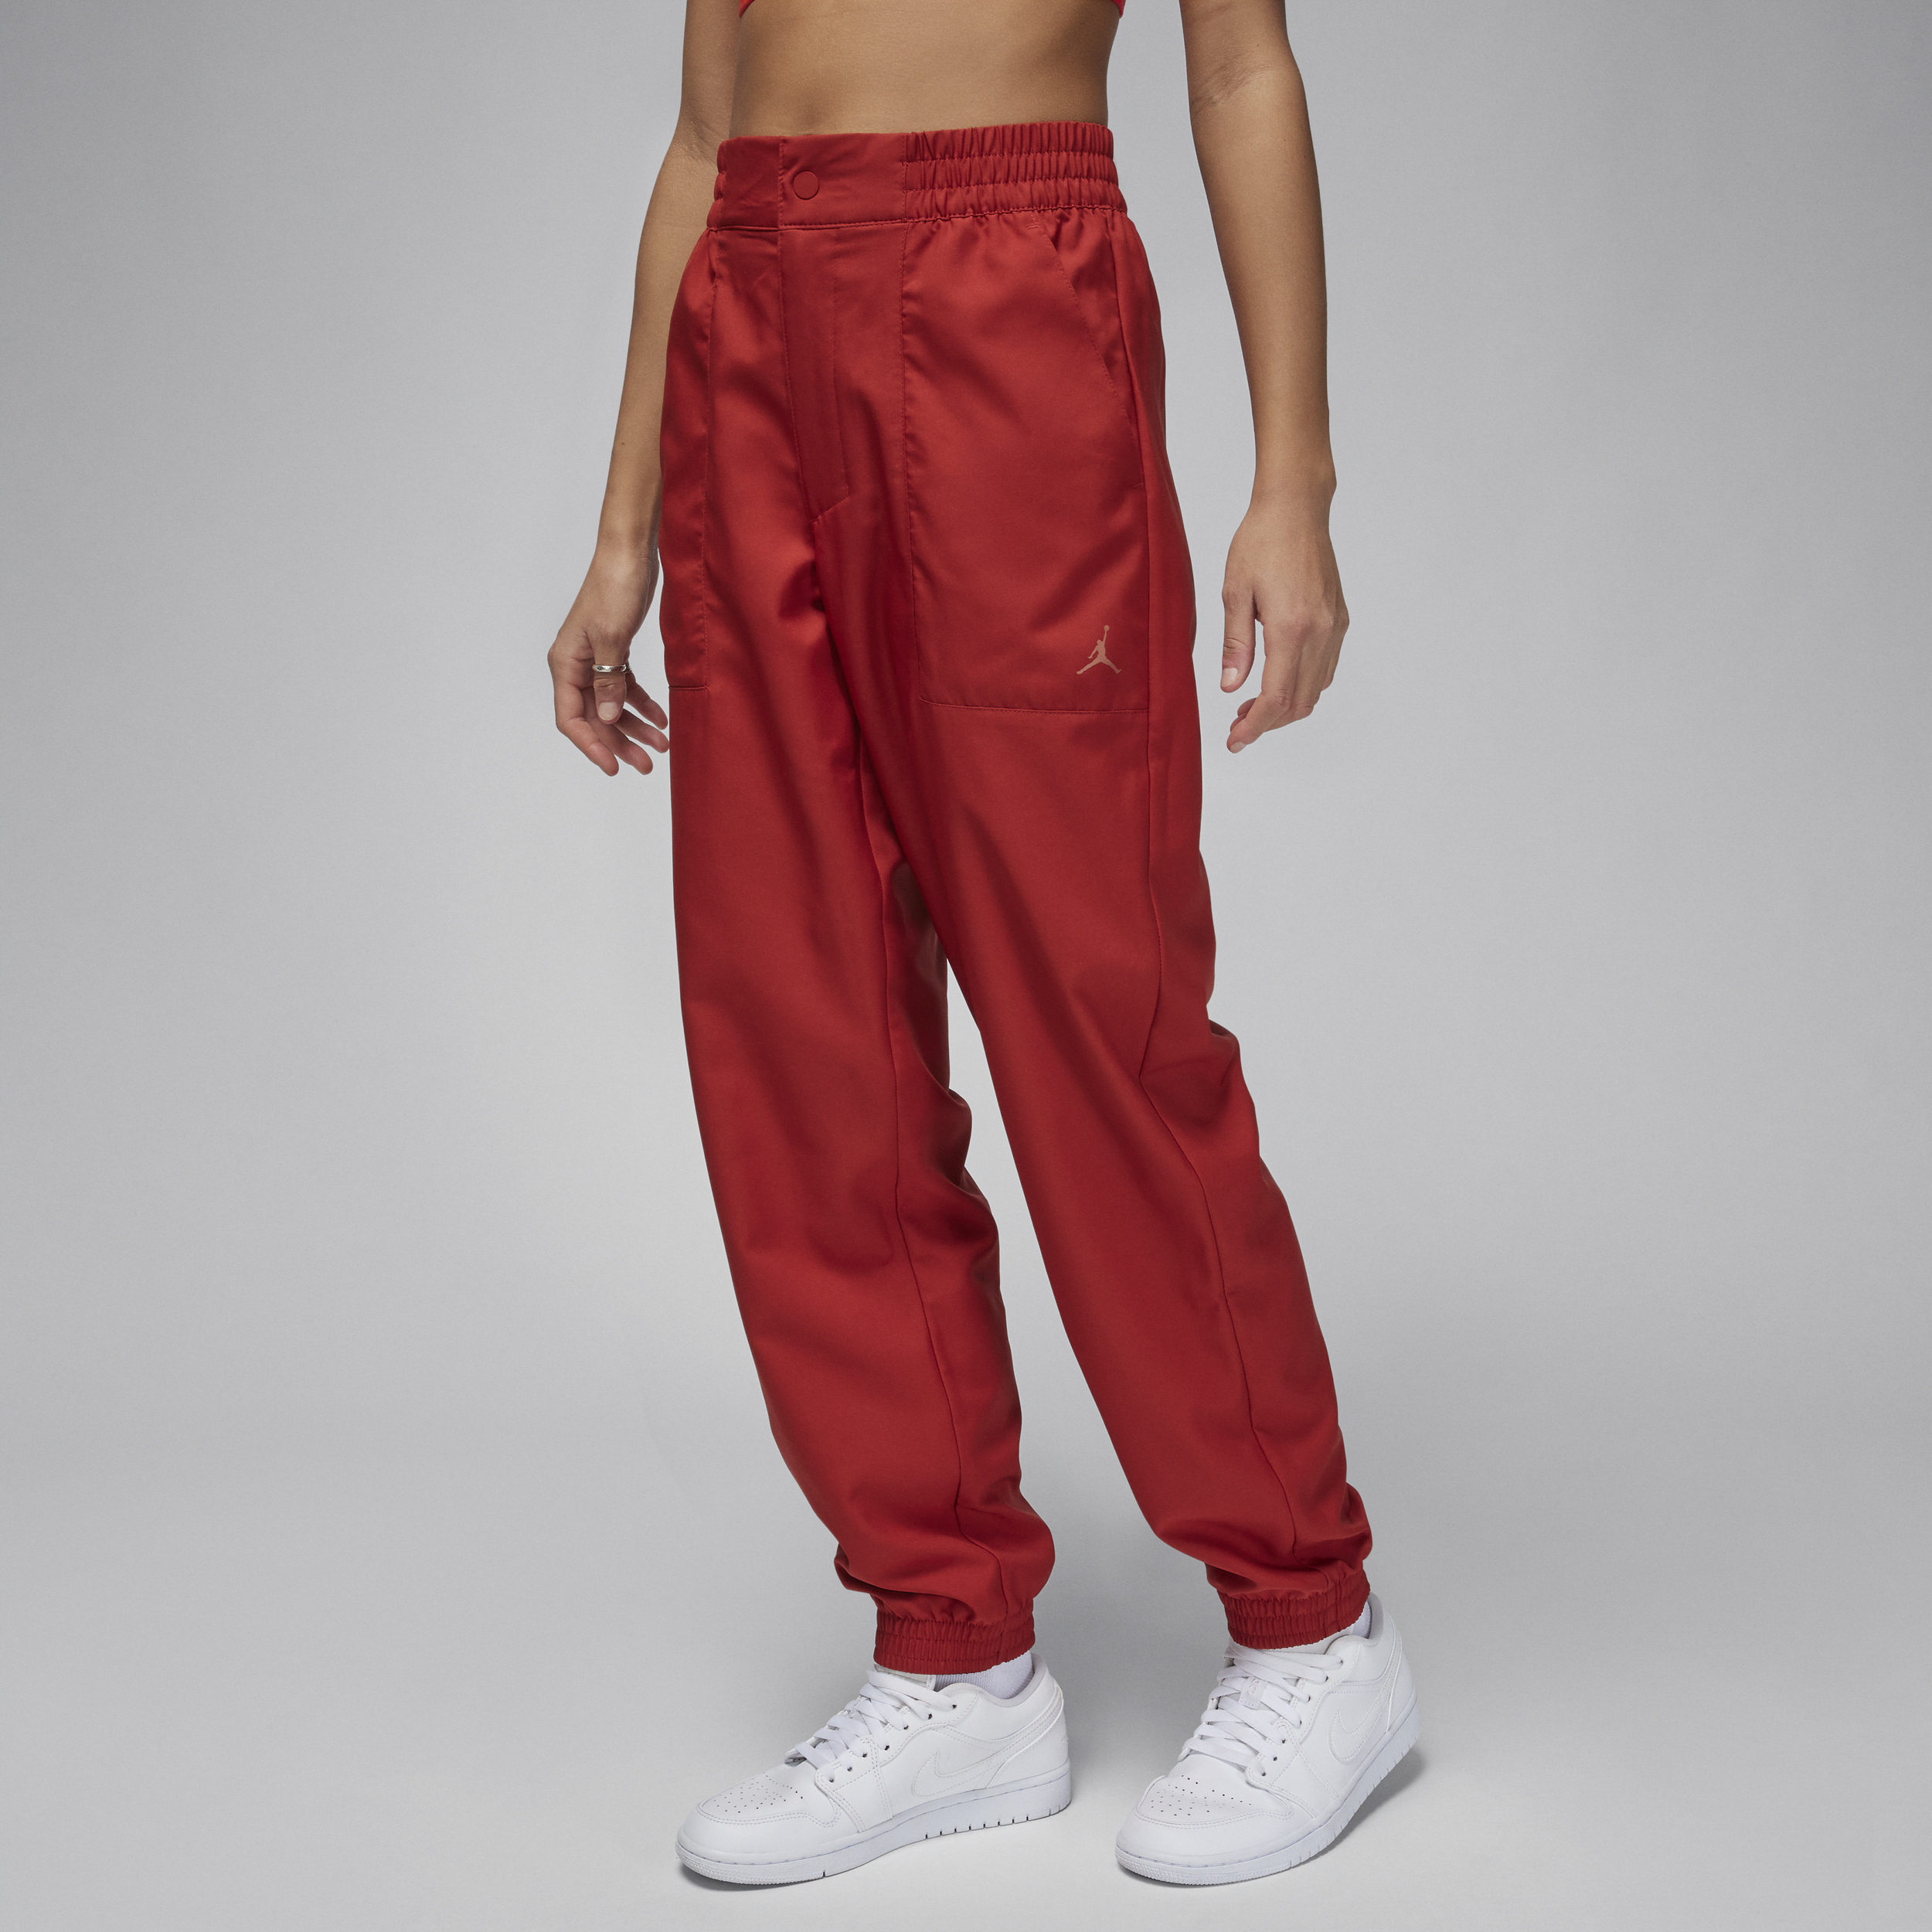 Jordan Pantalón de tejido Woven - Mujer - Rojo